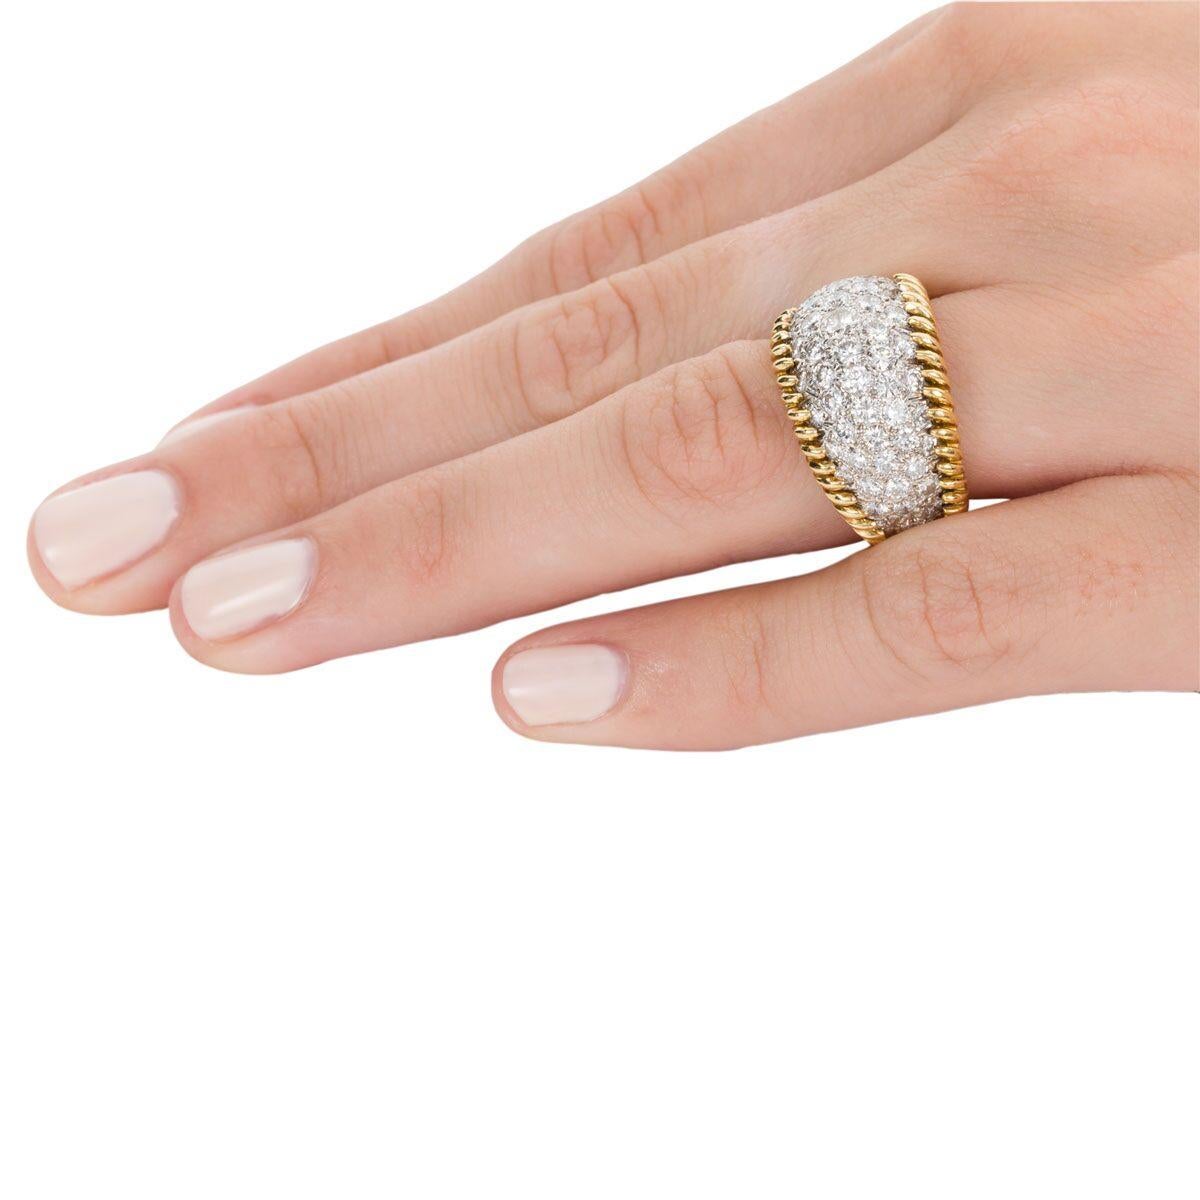 3.00 Carat Diamond Pave Set & 18 Karat Yellow Gold Ring - Ring Size 5.5 4